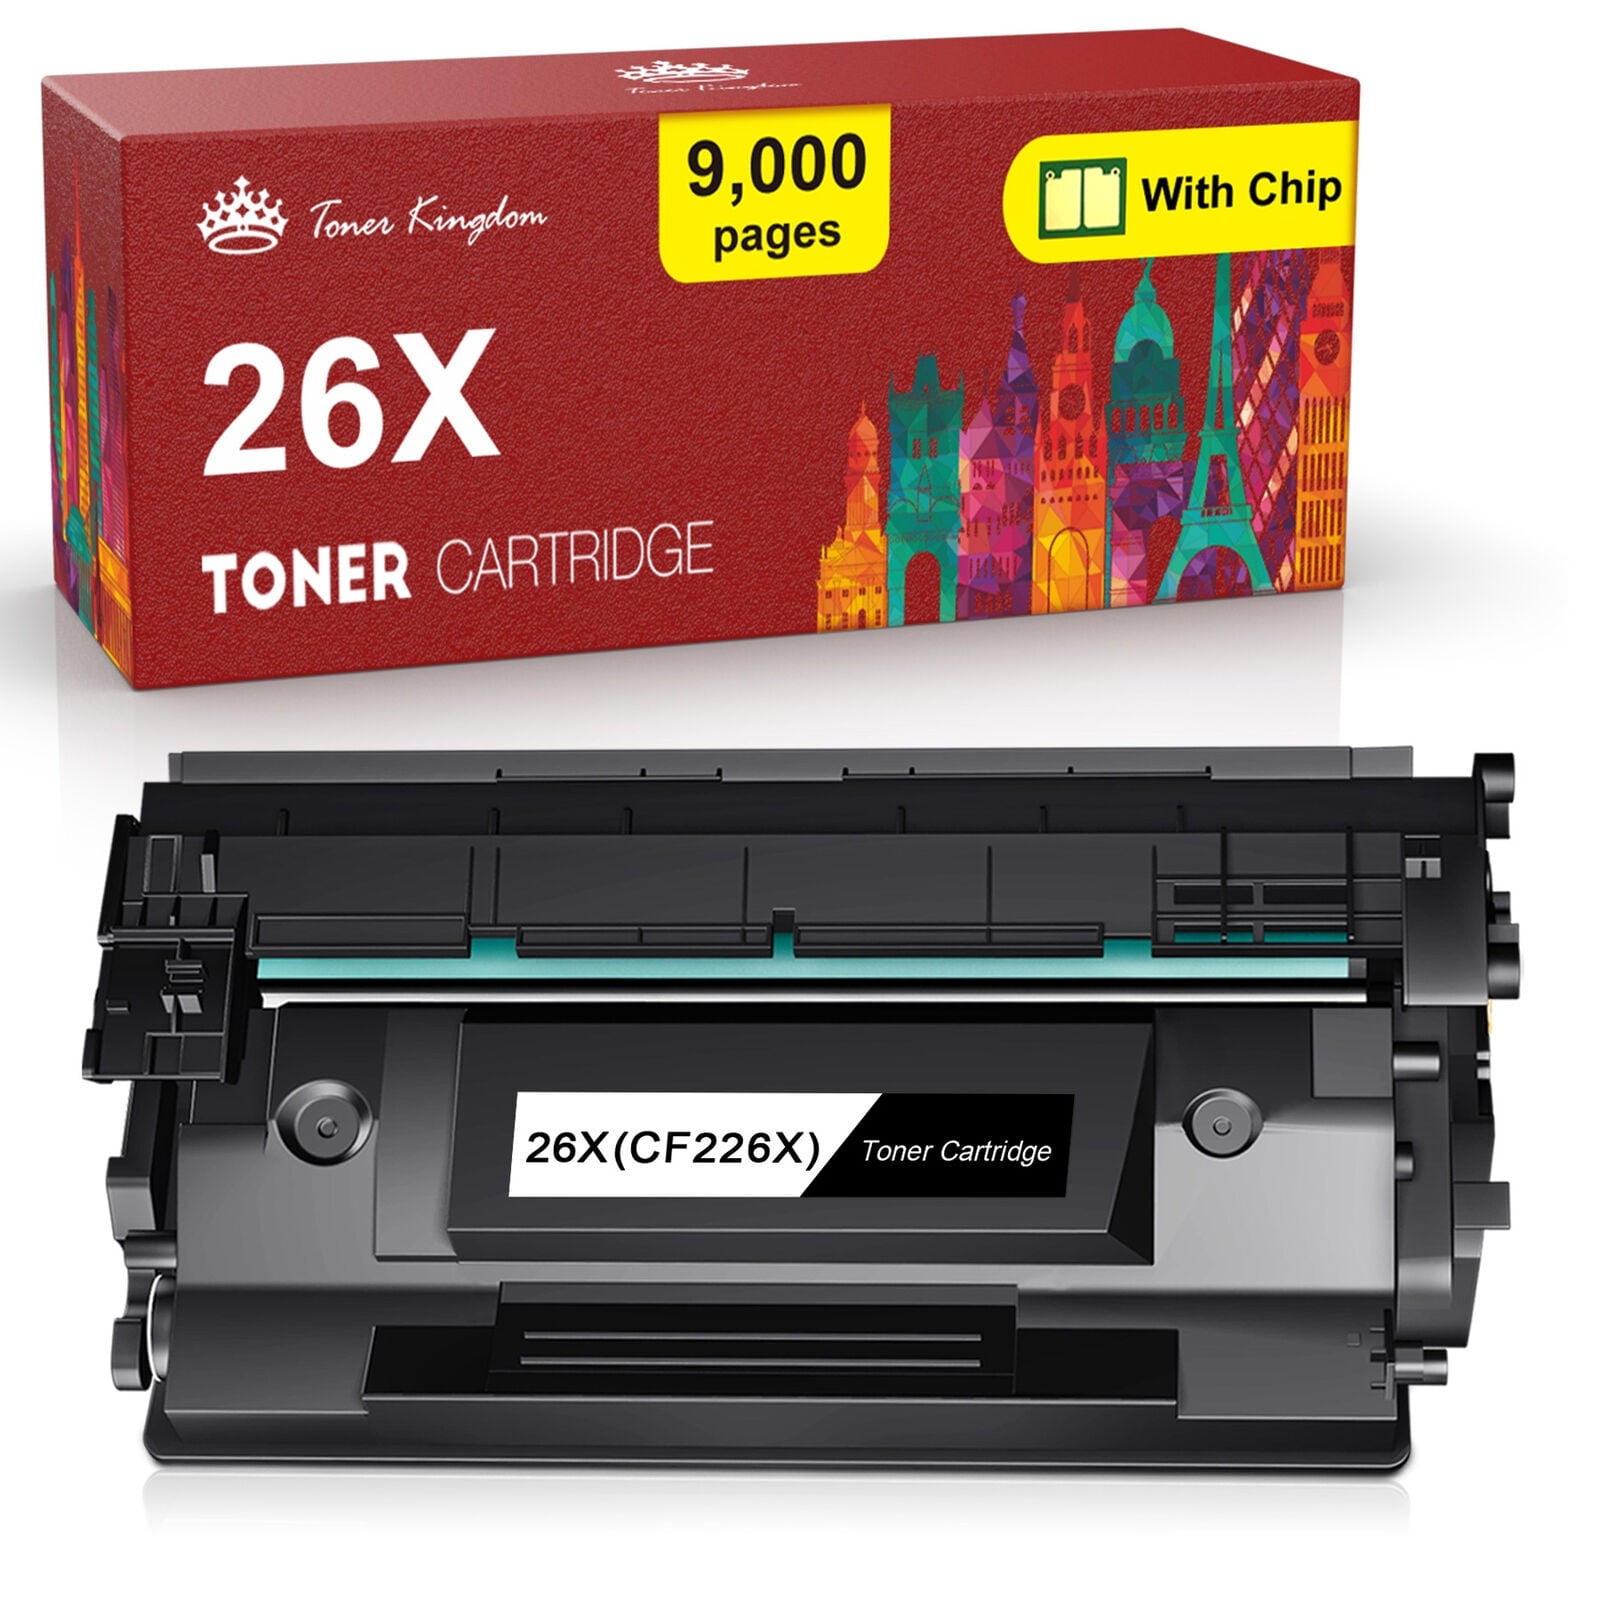 26X CF226X Toner for HP Printer Ink (Black, 1-Pack)